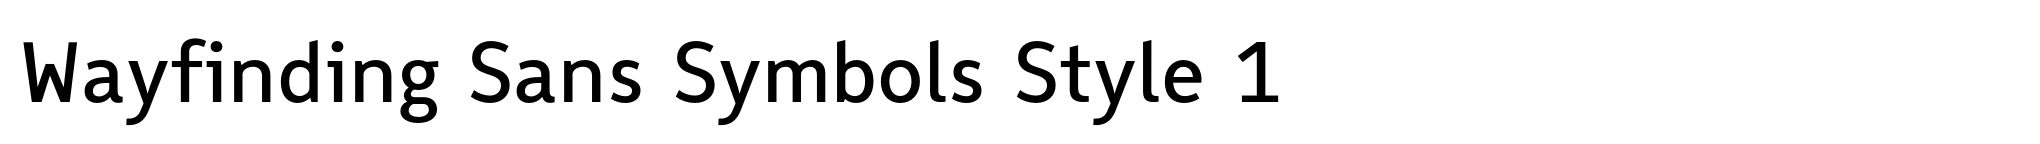 Wayfinding Sans Symbols Style 1 image